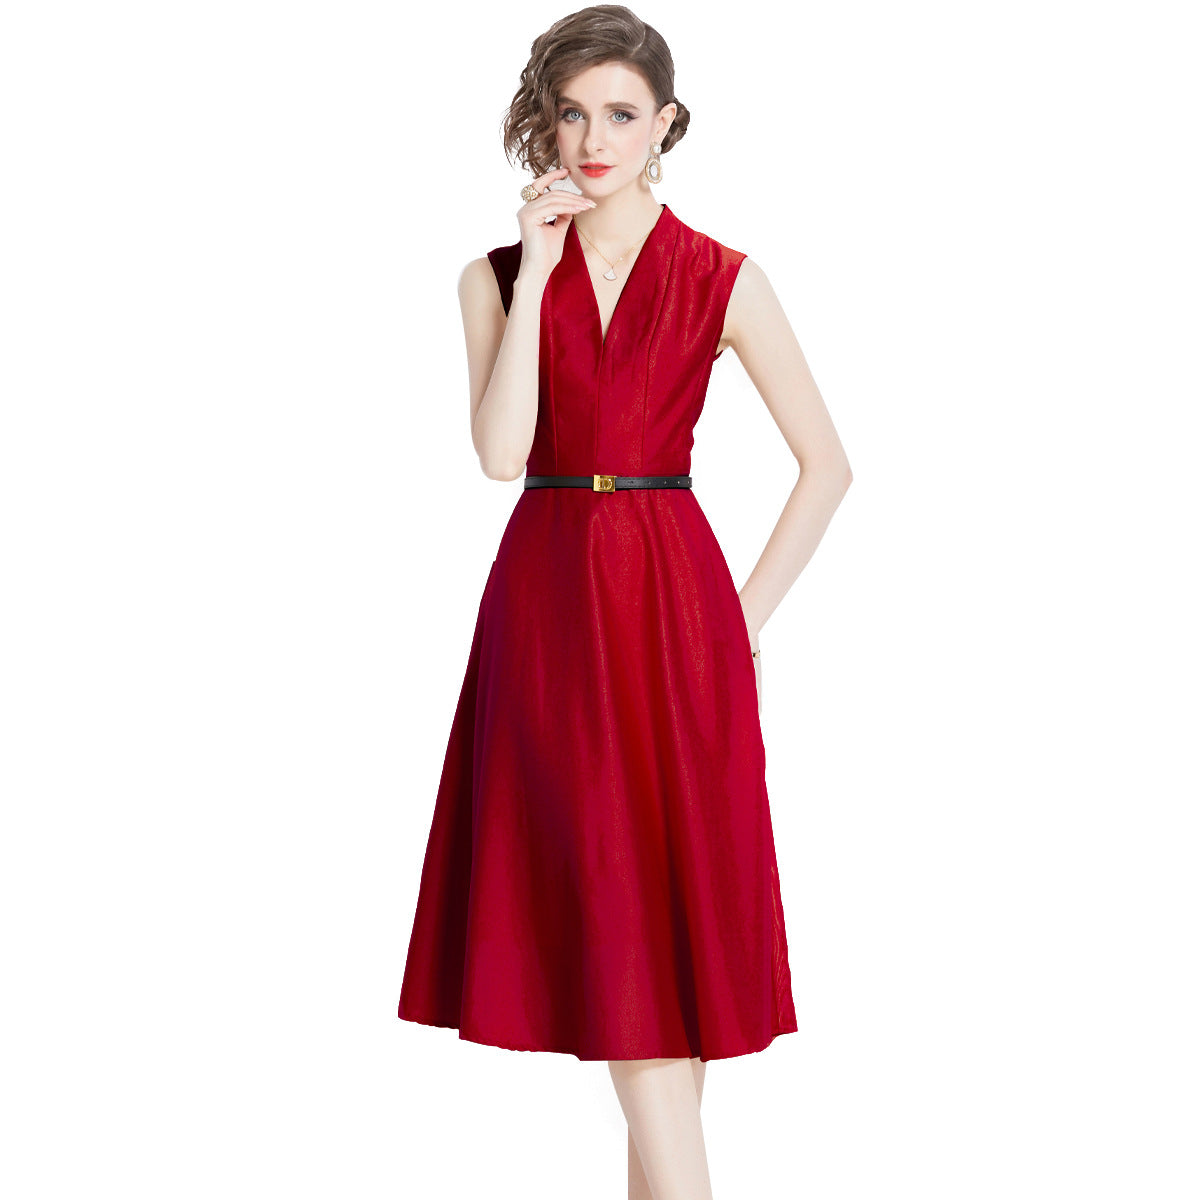 Señora adulta joven como mujer estilo vestido rojo sin mangas